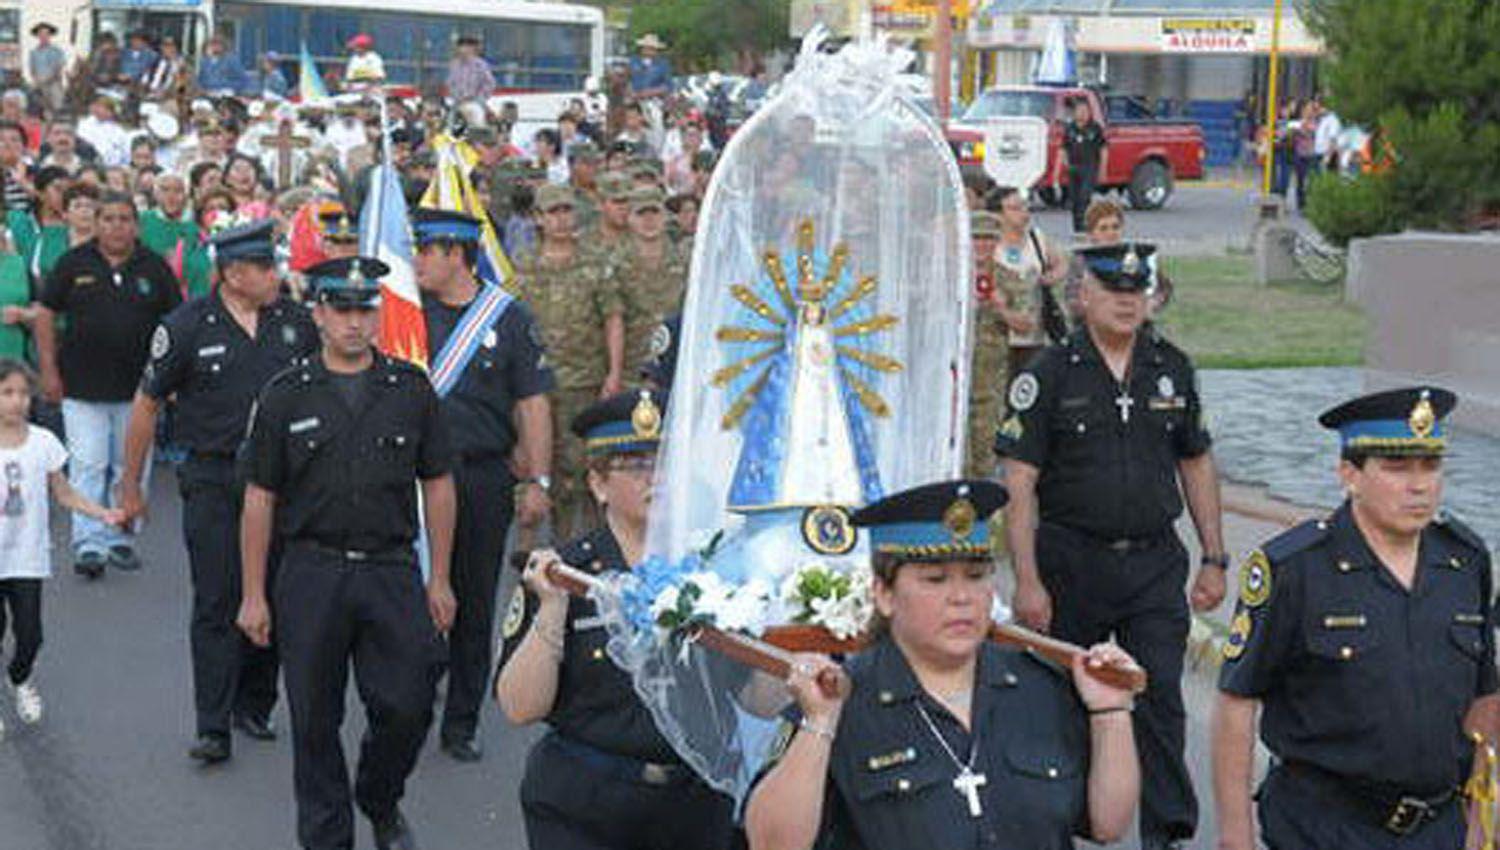 La Policiacutea Federal prepara su homenaje a la Virgen de Lujaacuten